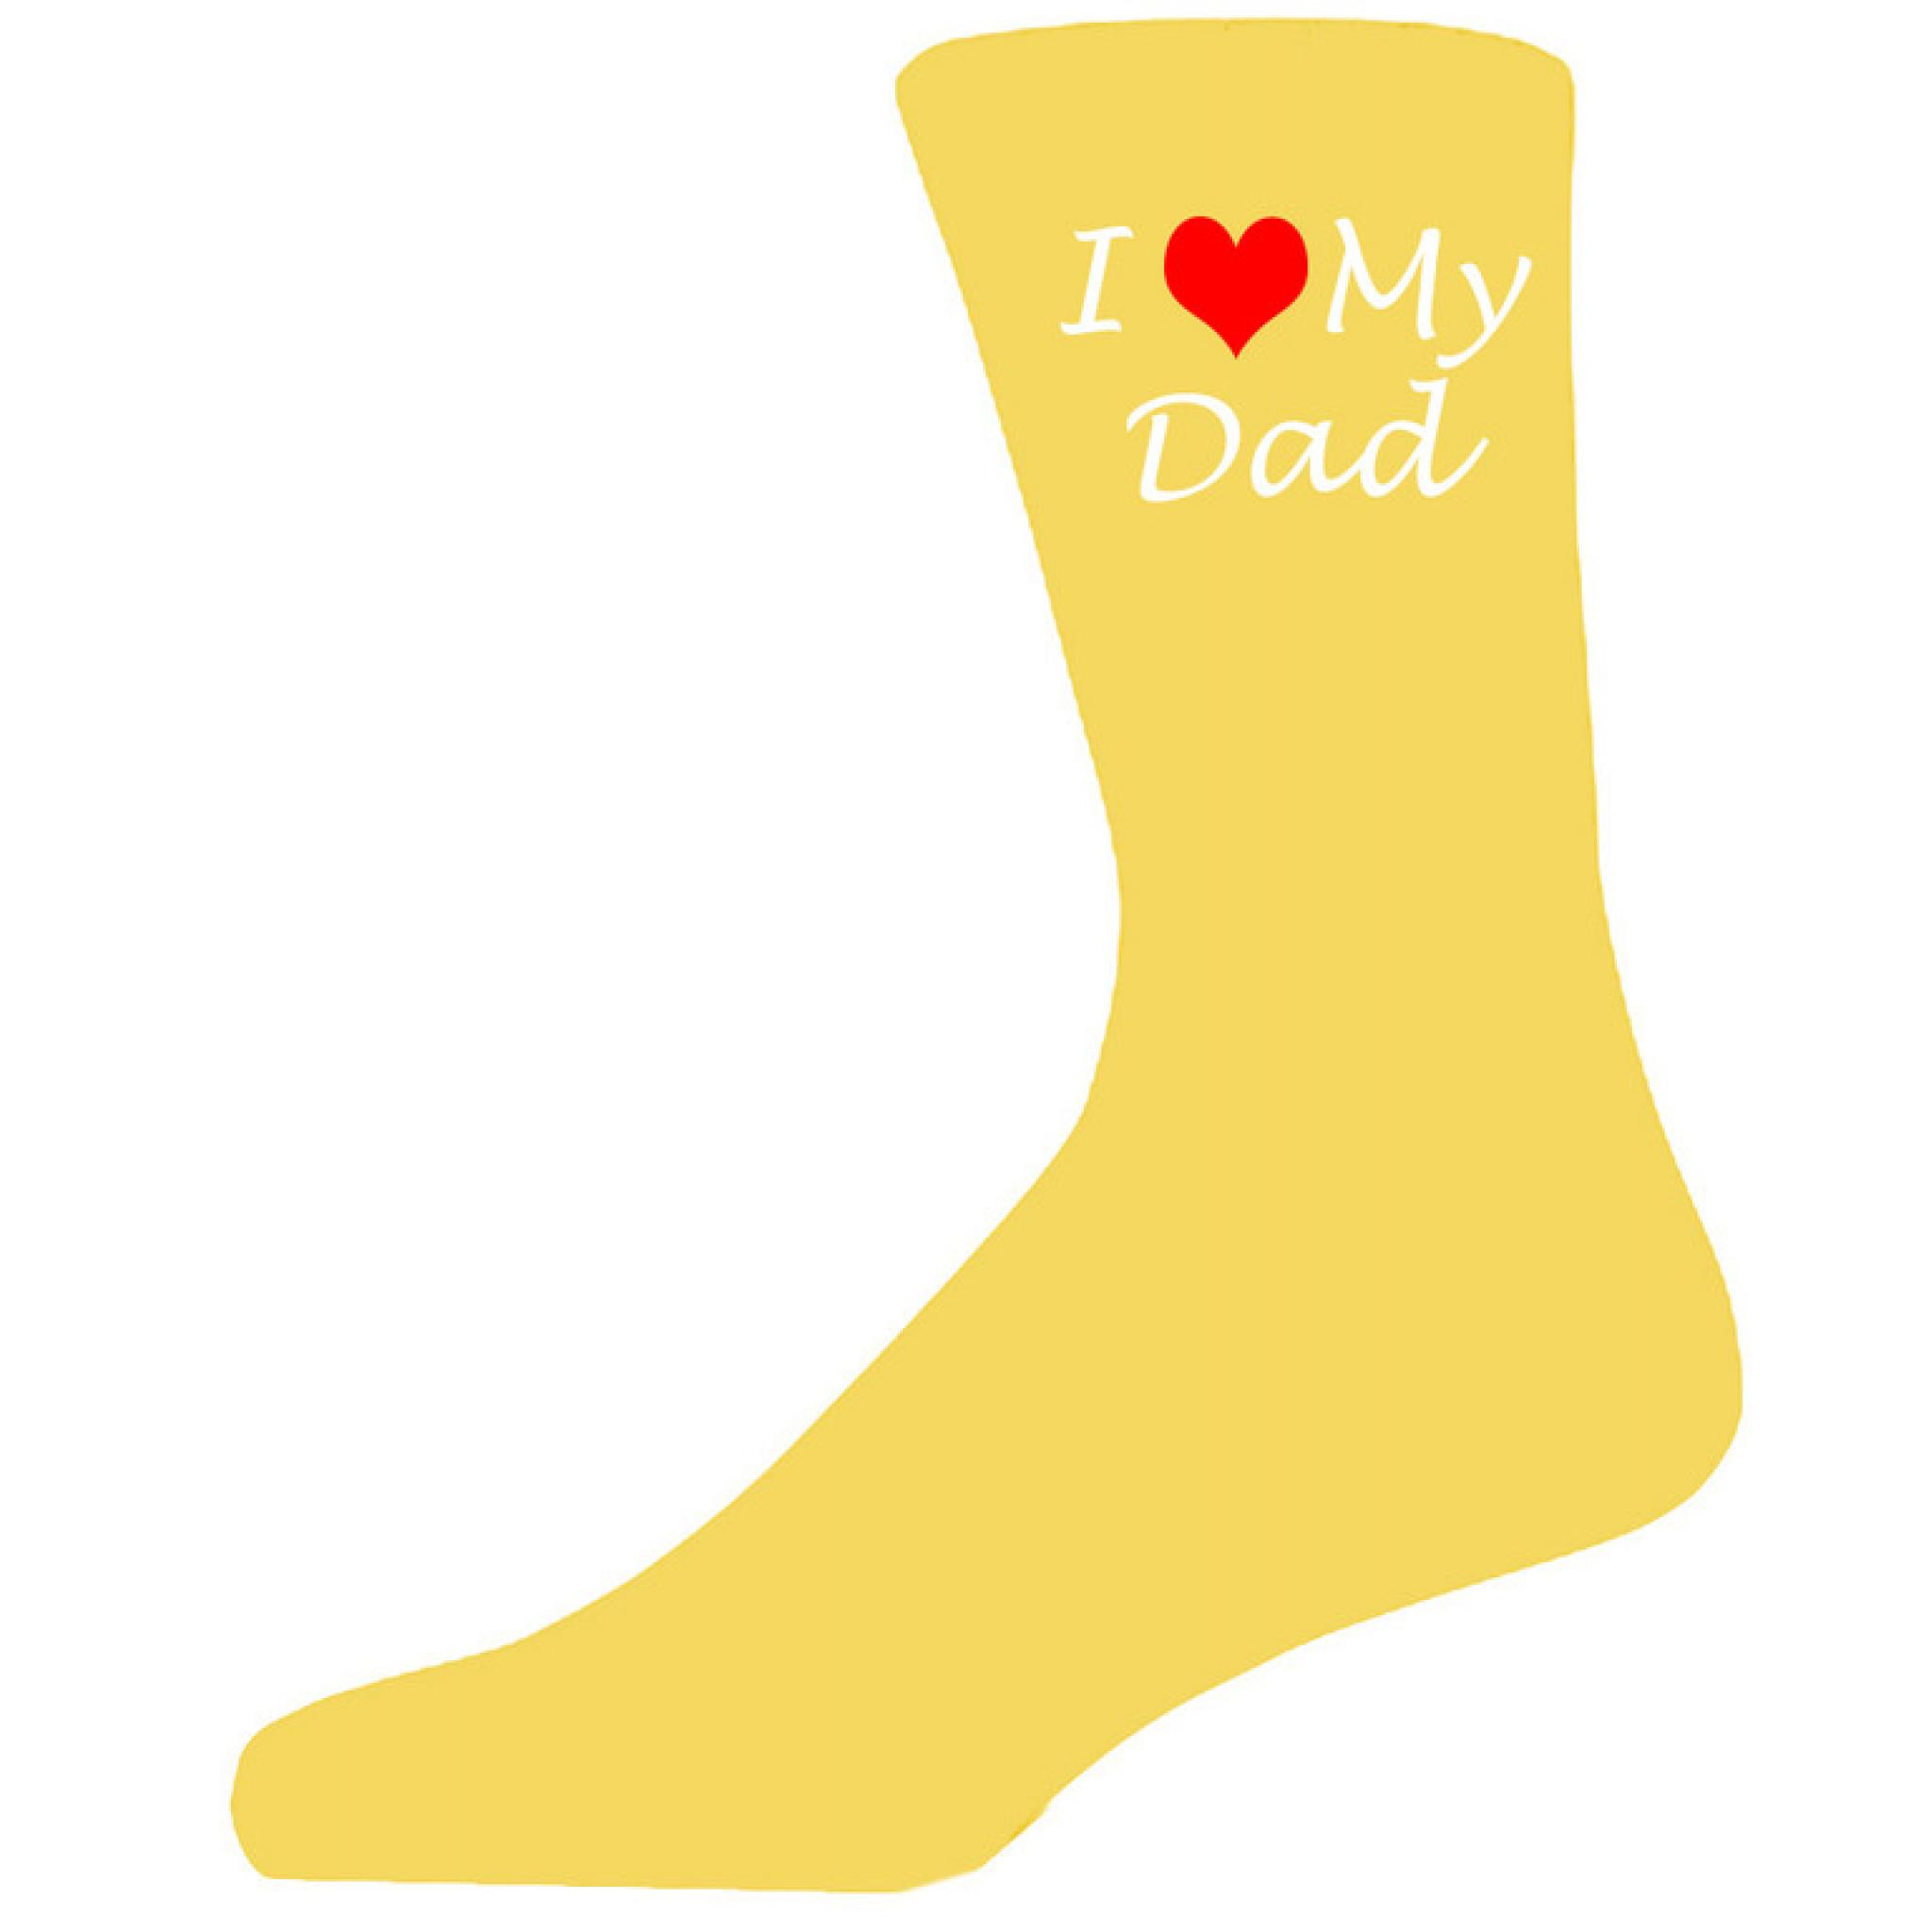 Fathers Day, novelty socks